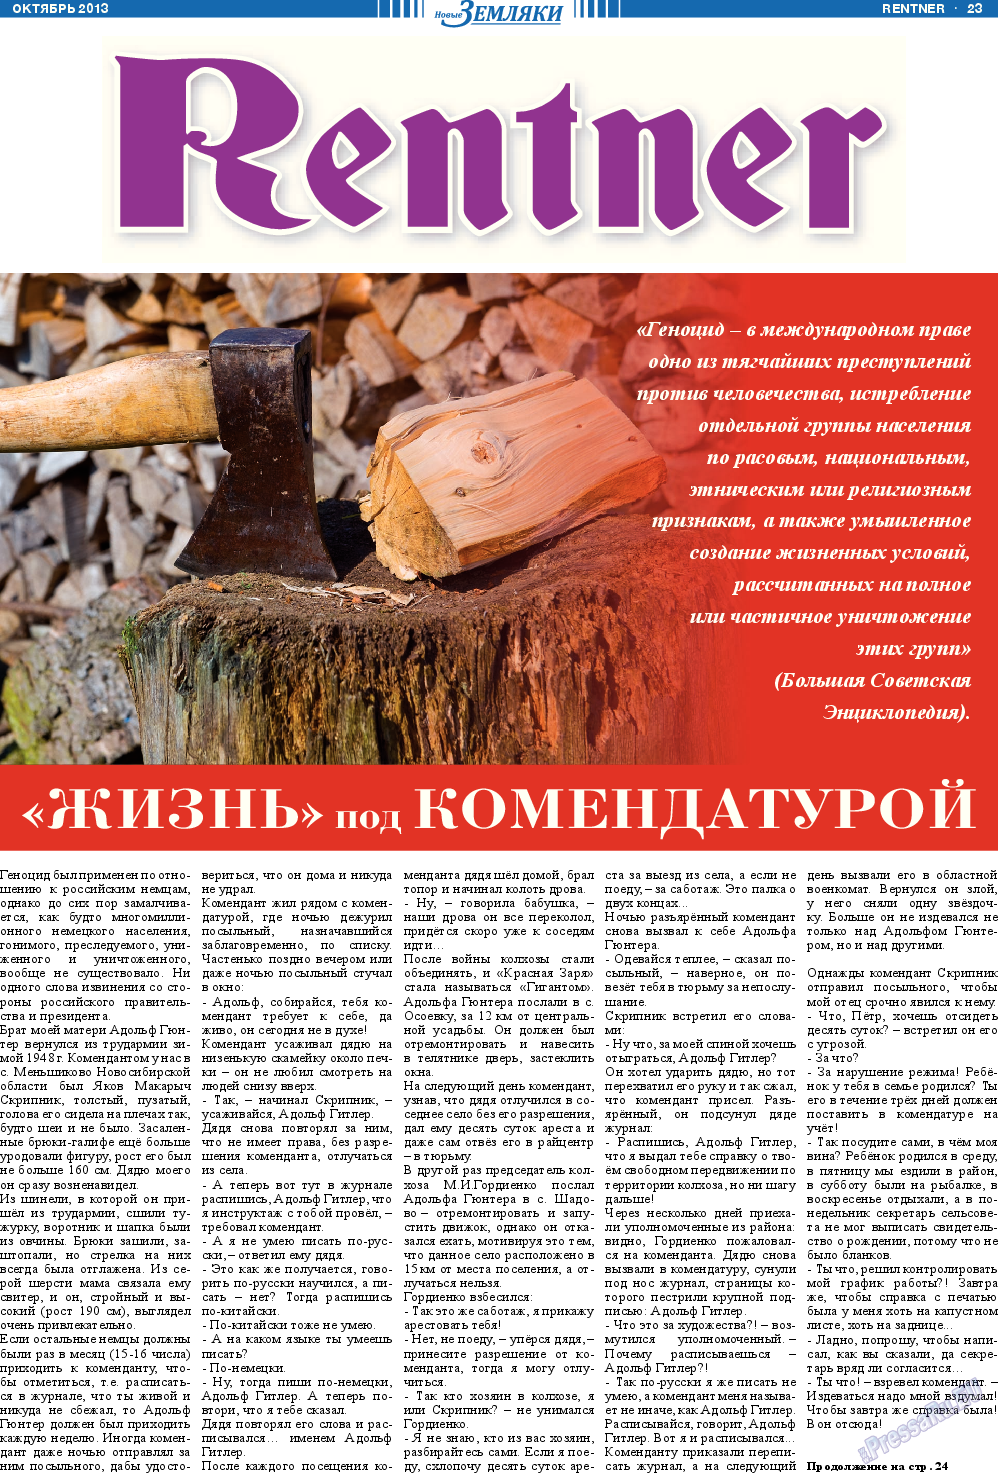 Новые Земляки, газета. 2013 №10 стр.23